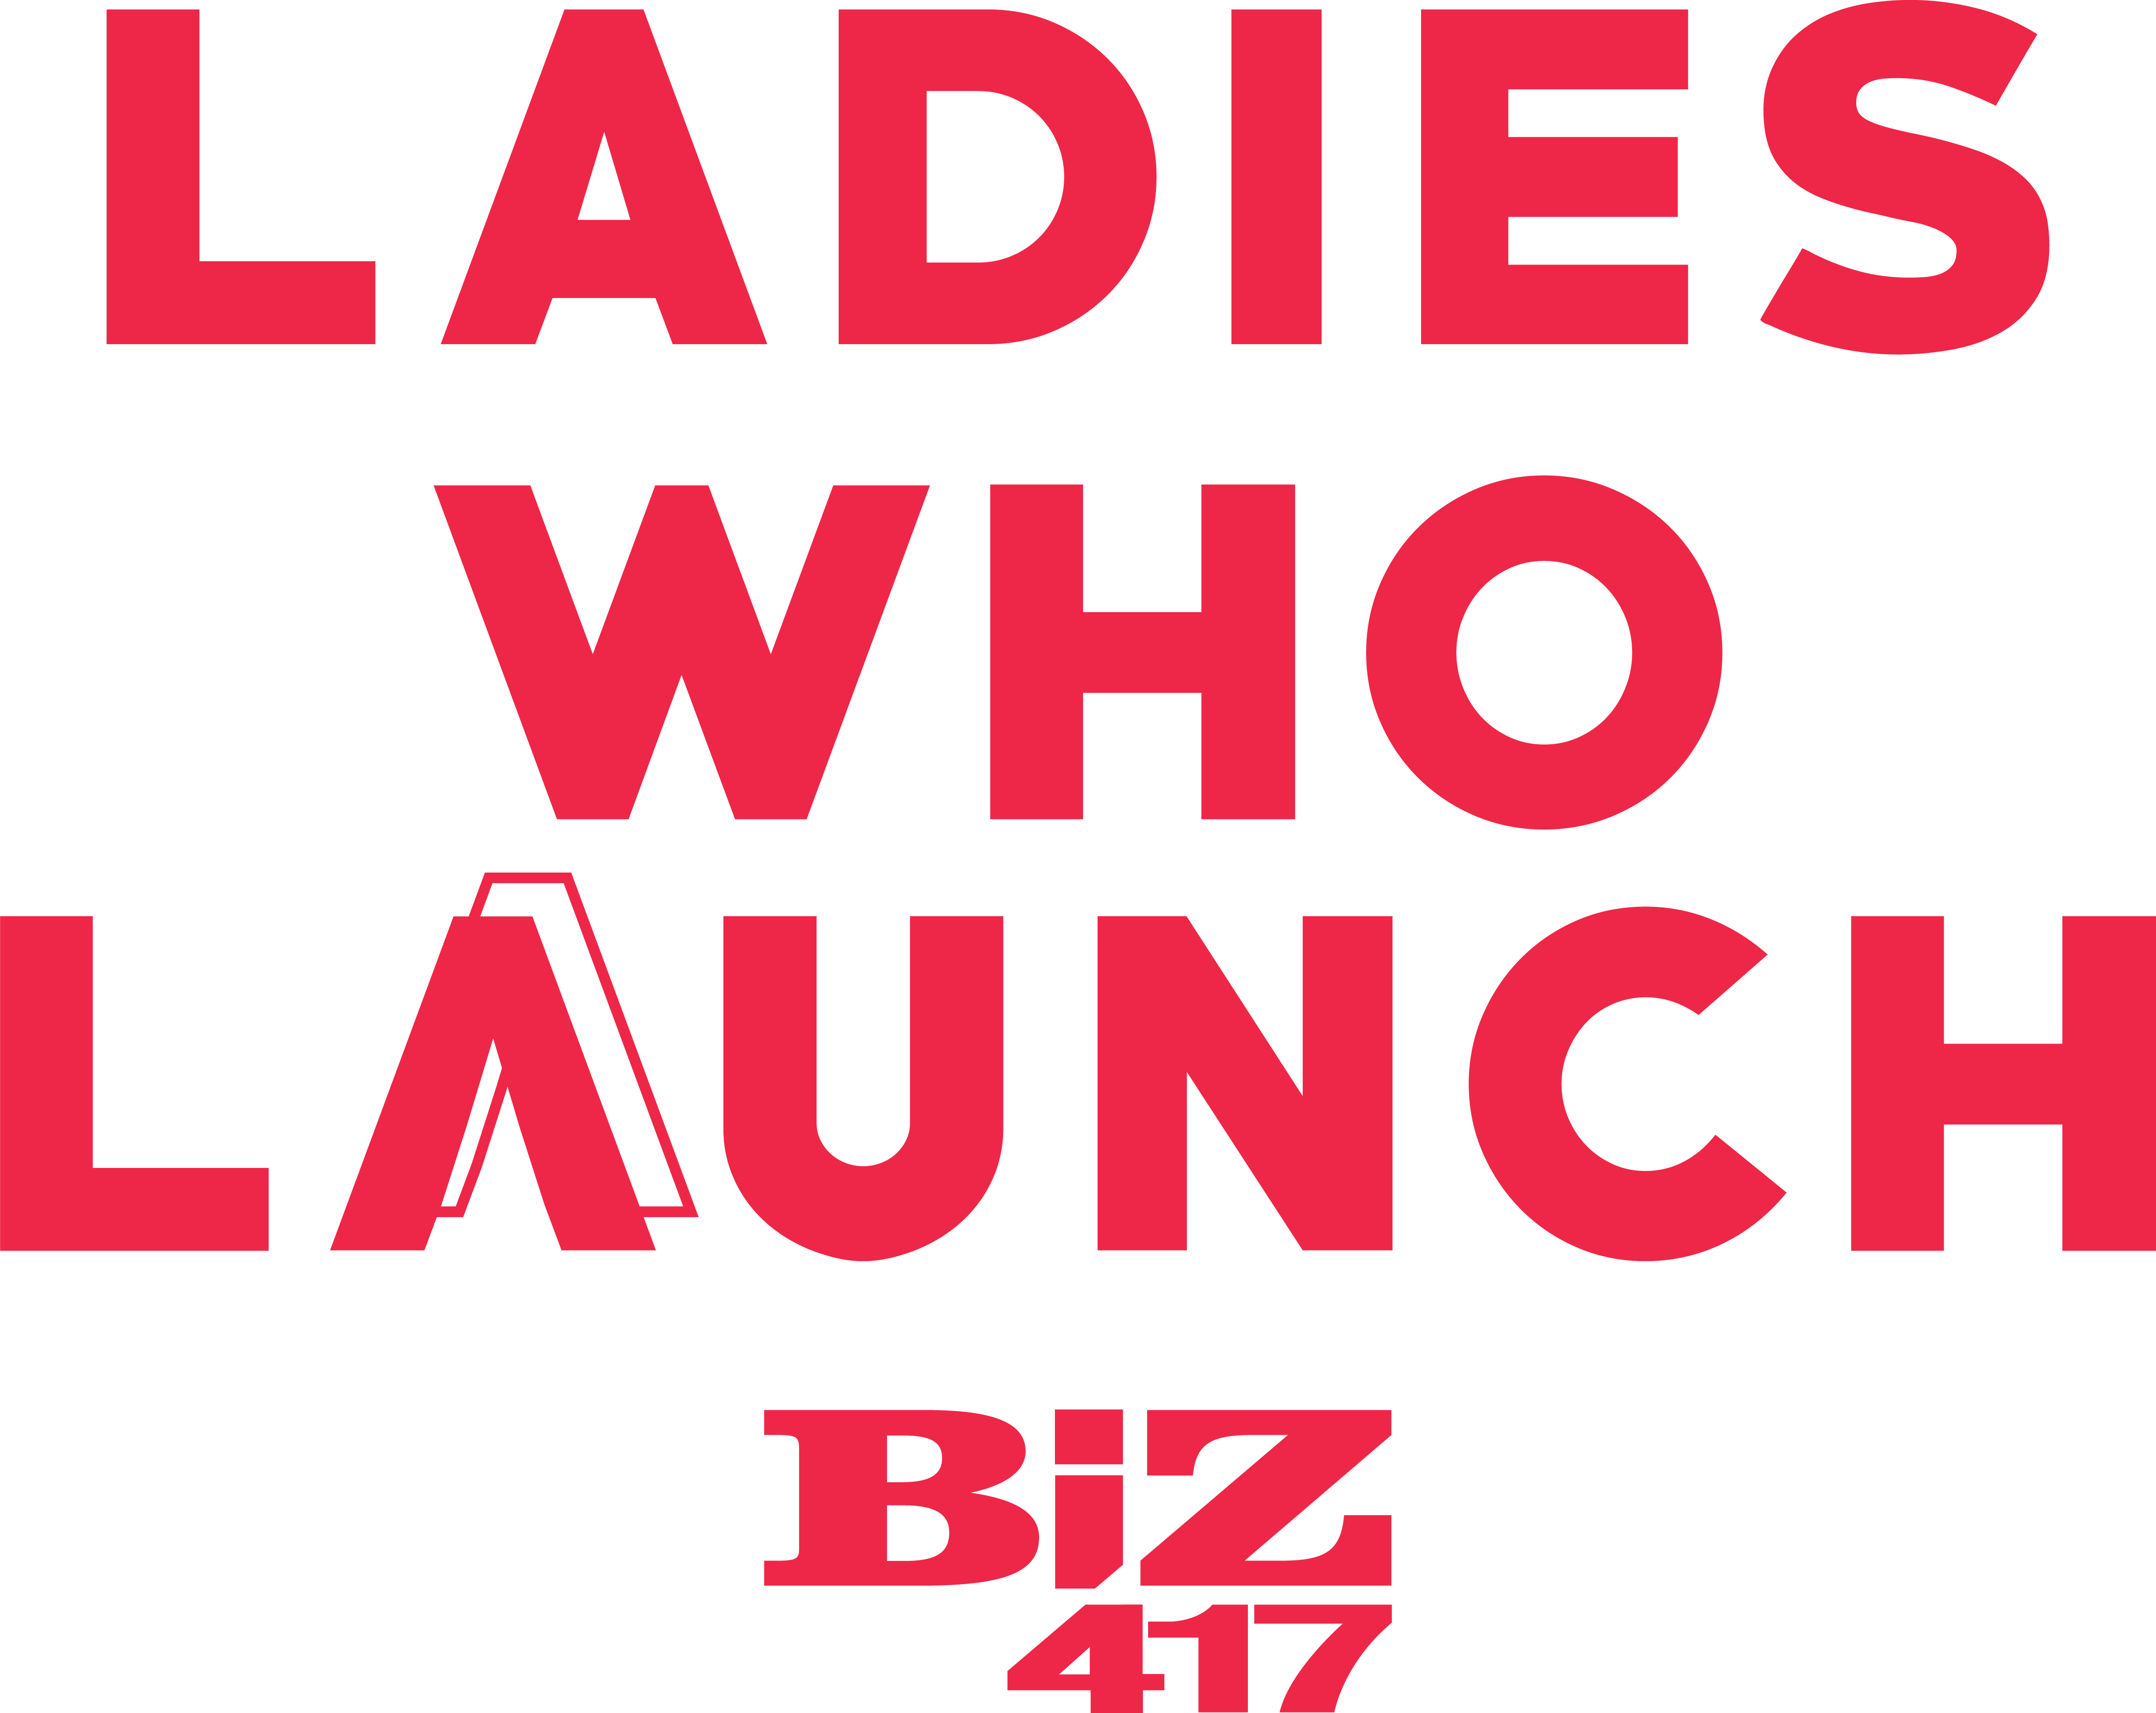 Ladies Who Launch Sponsor